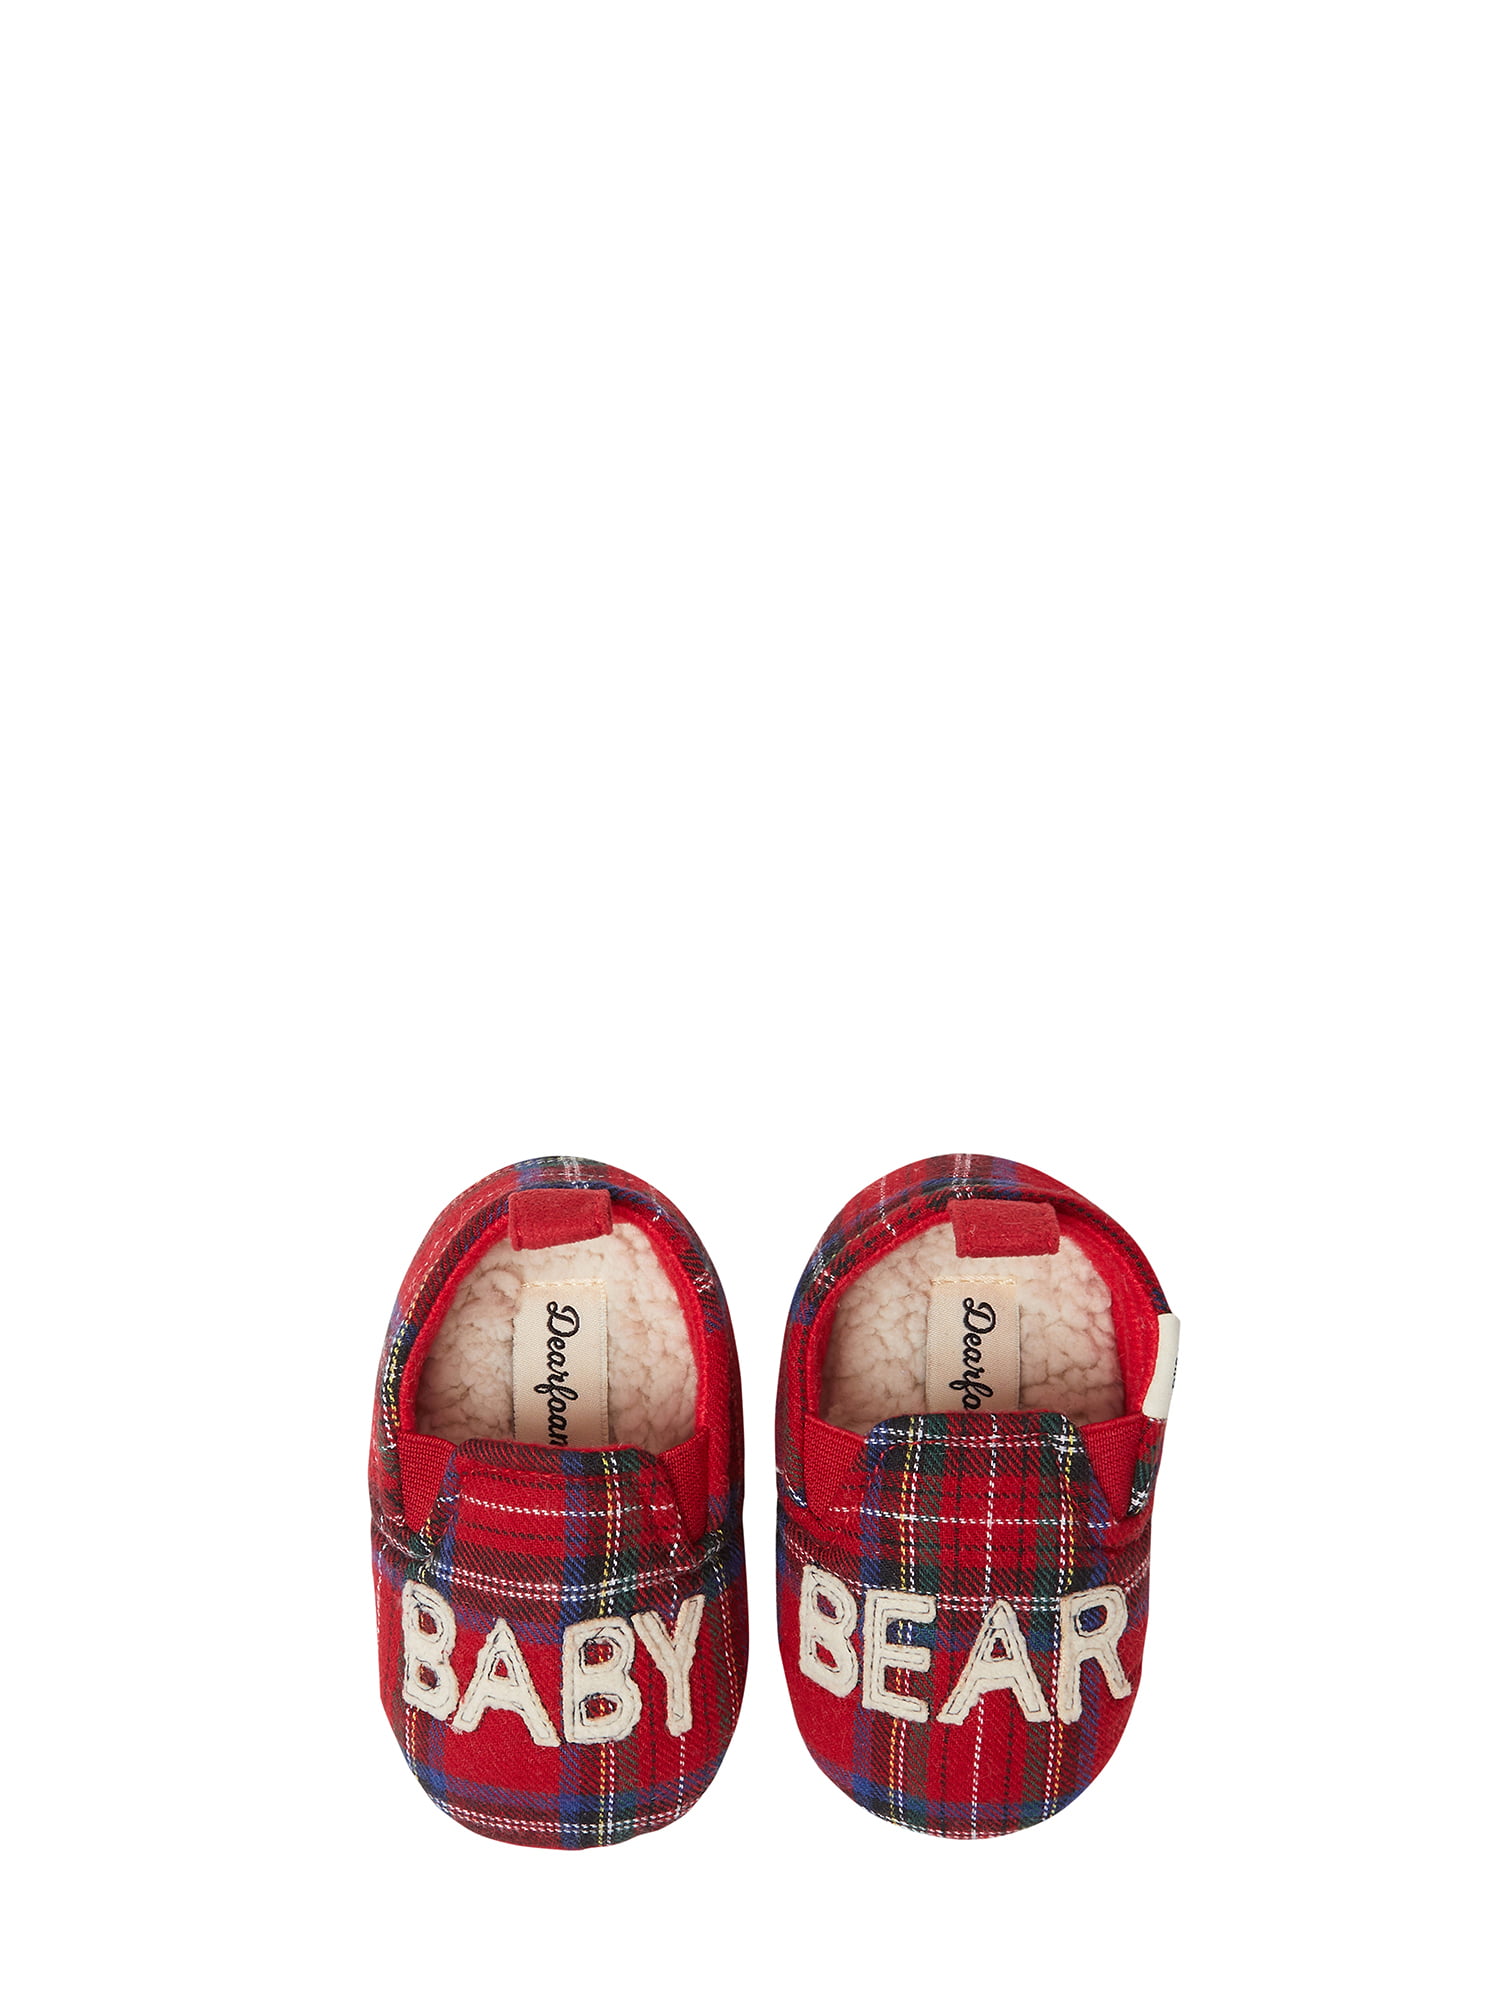 Dearfoams Baby Bear Closed Back Slippers 89ed392a c25c 48e9 84fa e1255cf12955 1.d2949832d357c9781681fa578cba82b7